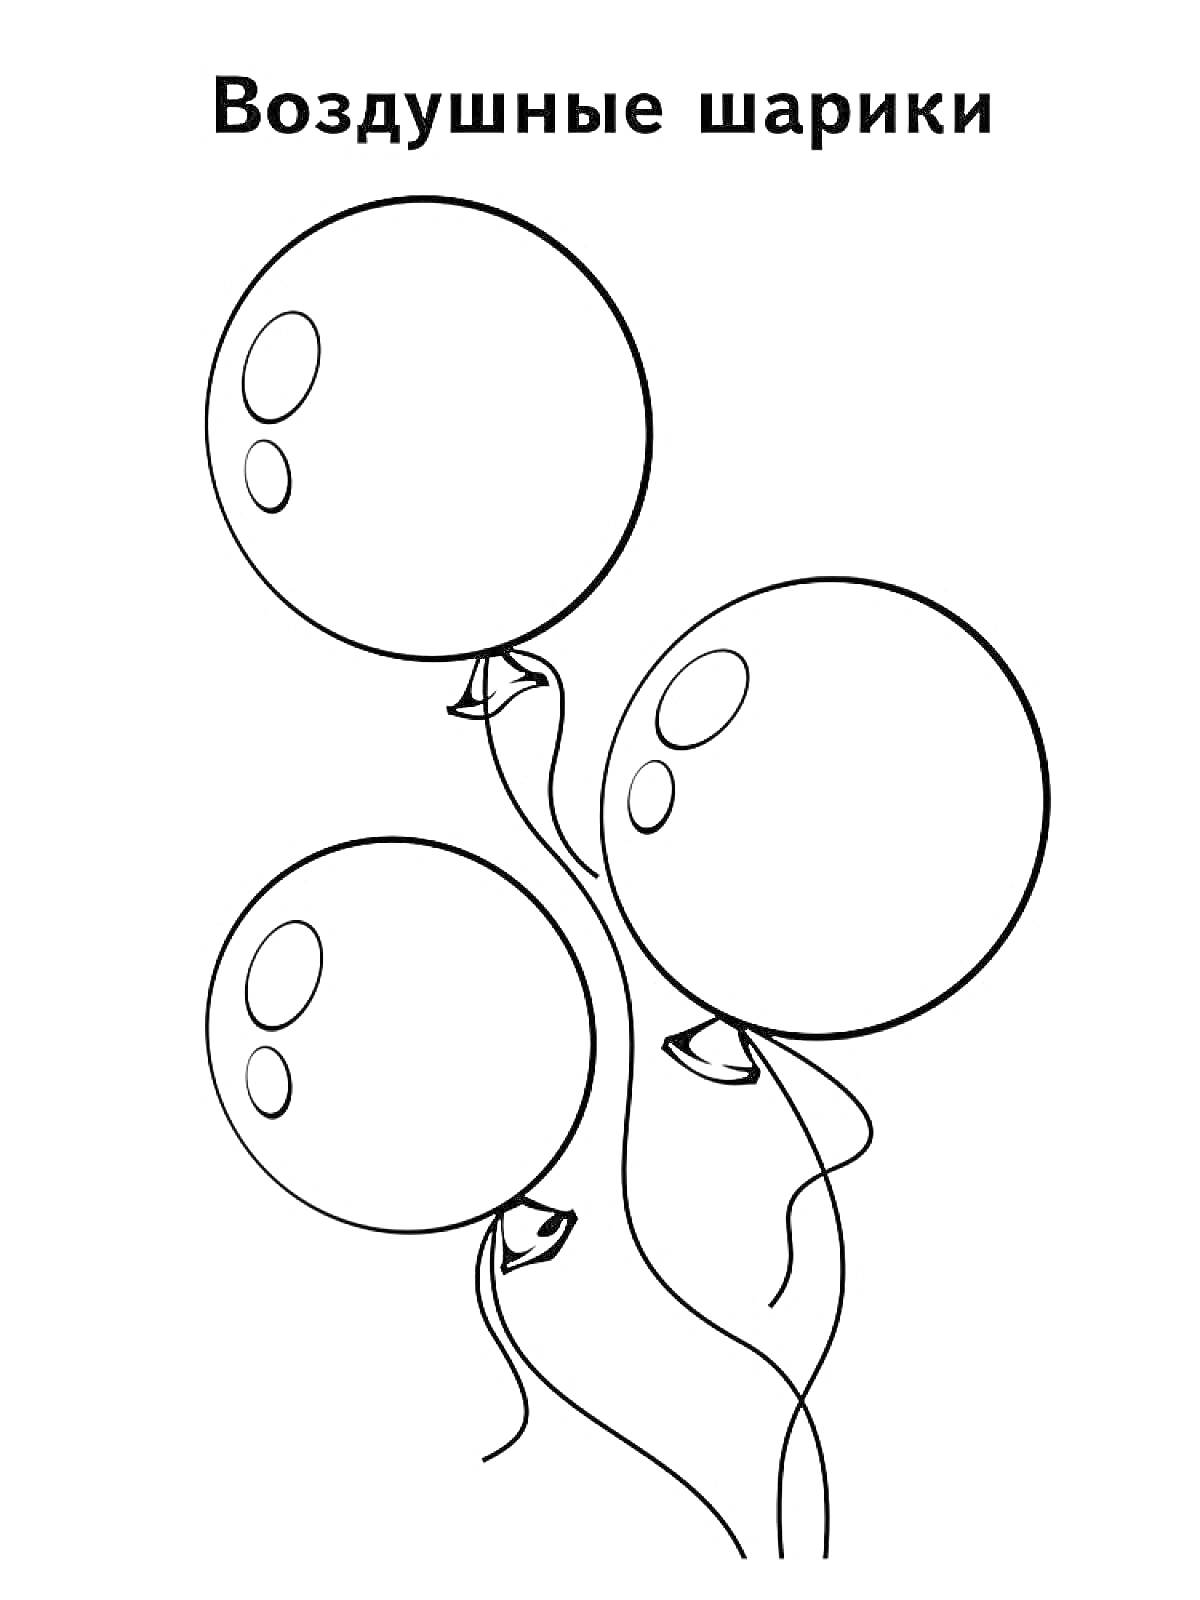 Раскраска Три воздушных шарика, поднятые в воздух, с длинными нитями